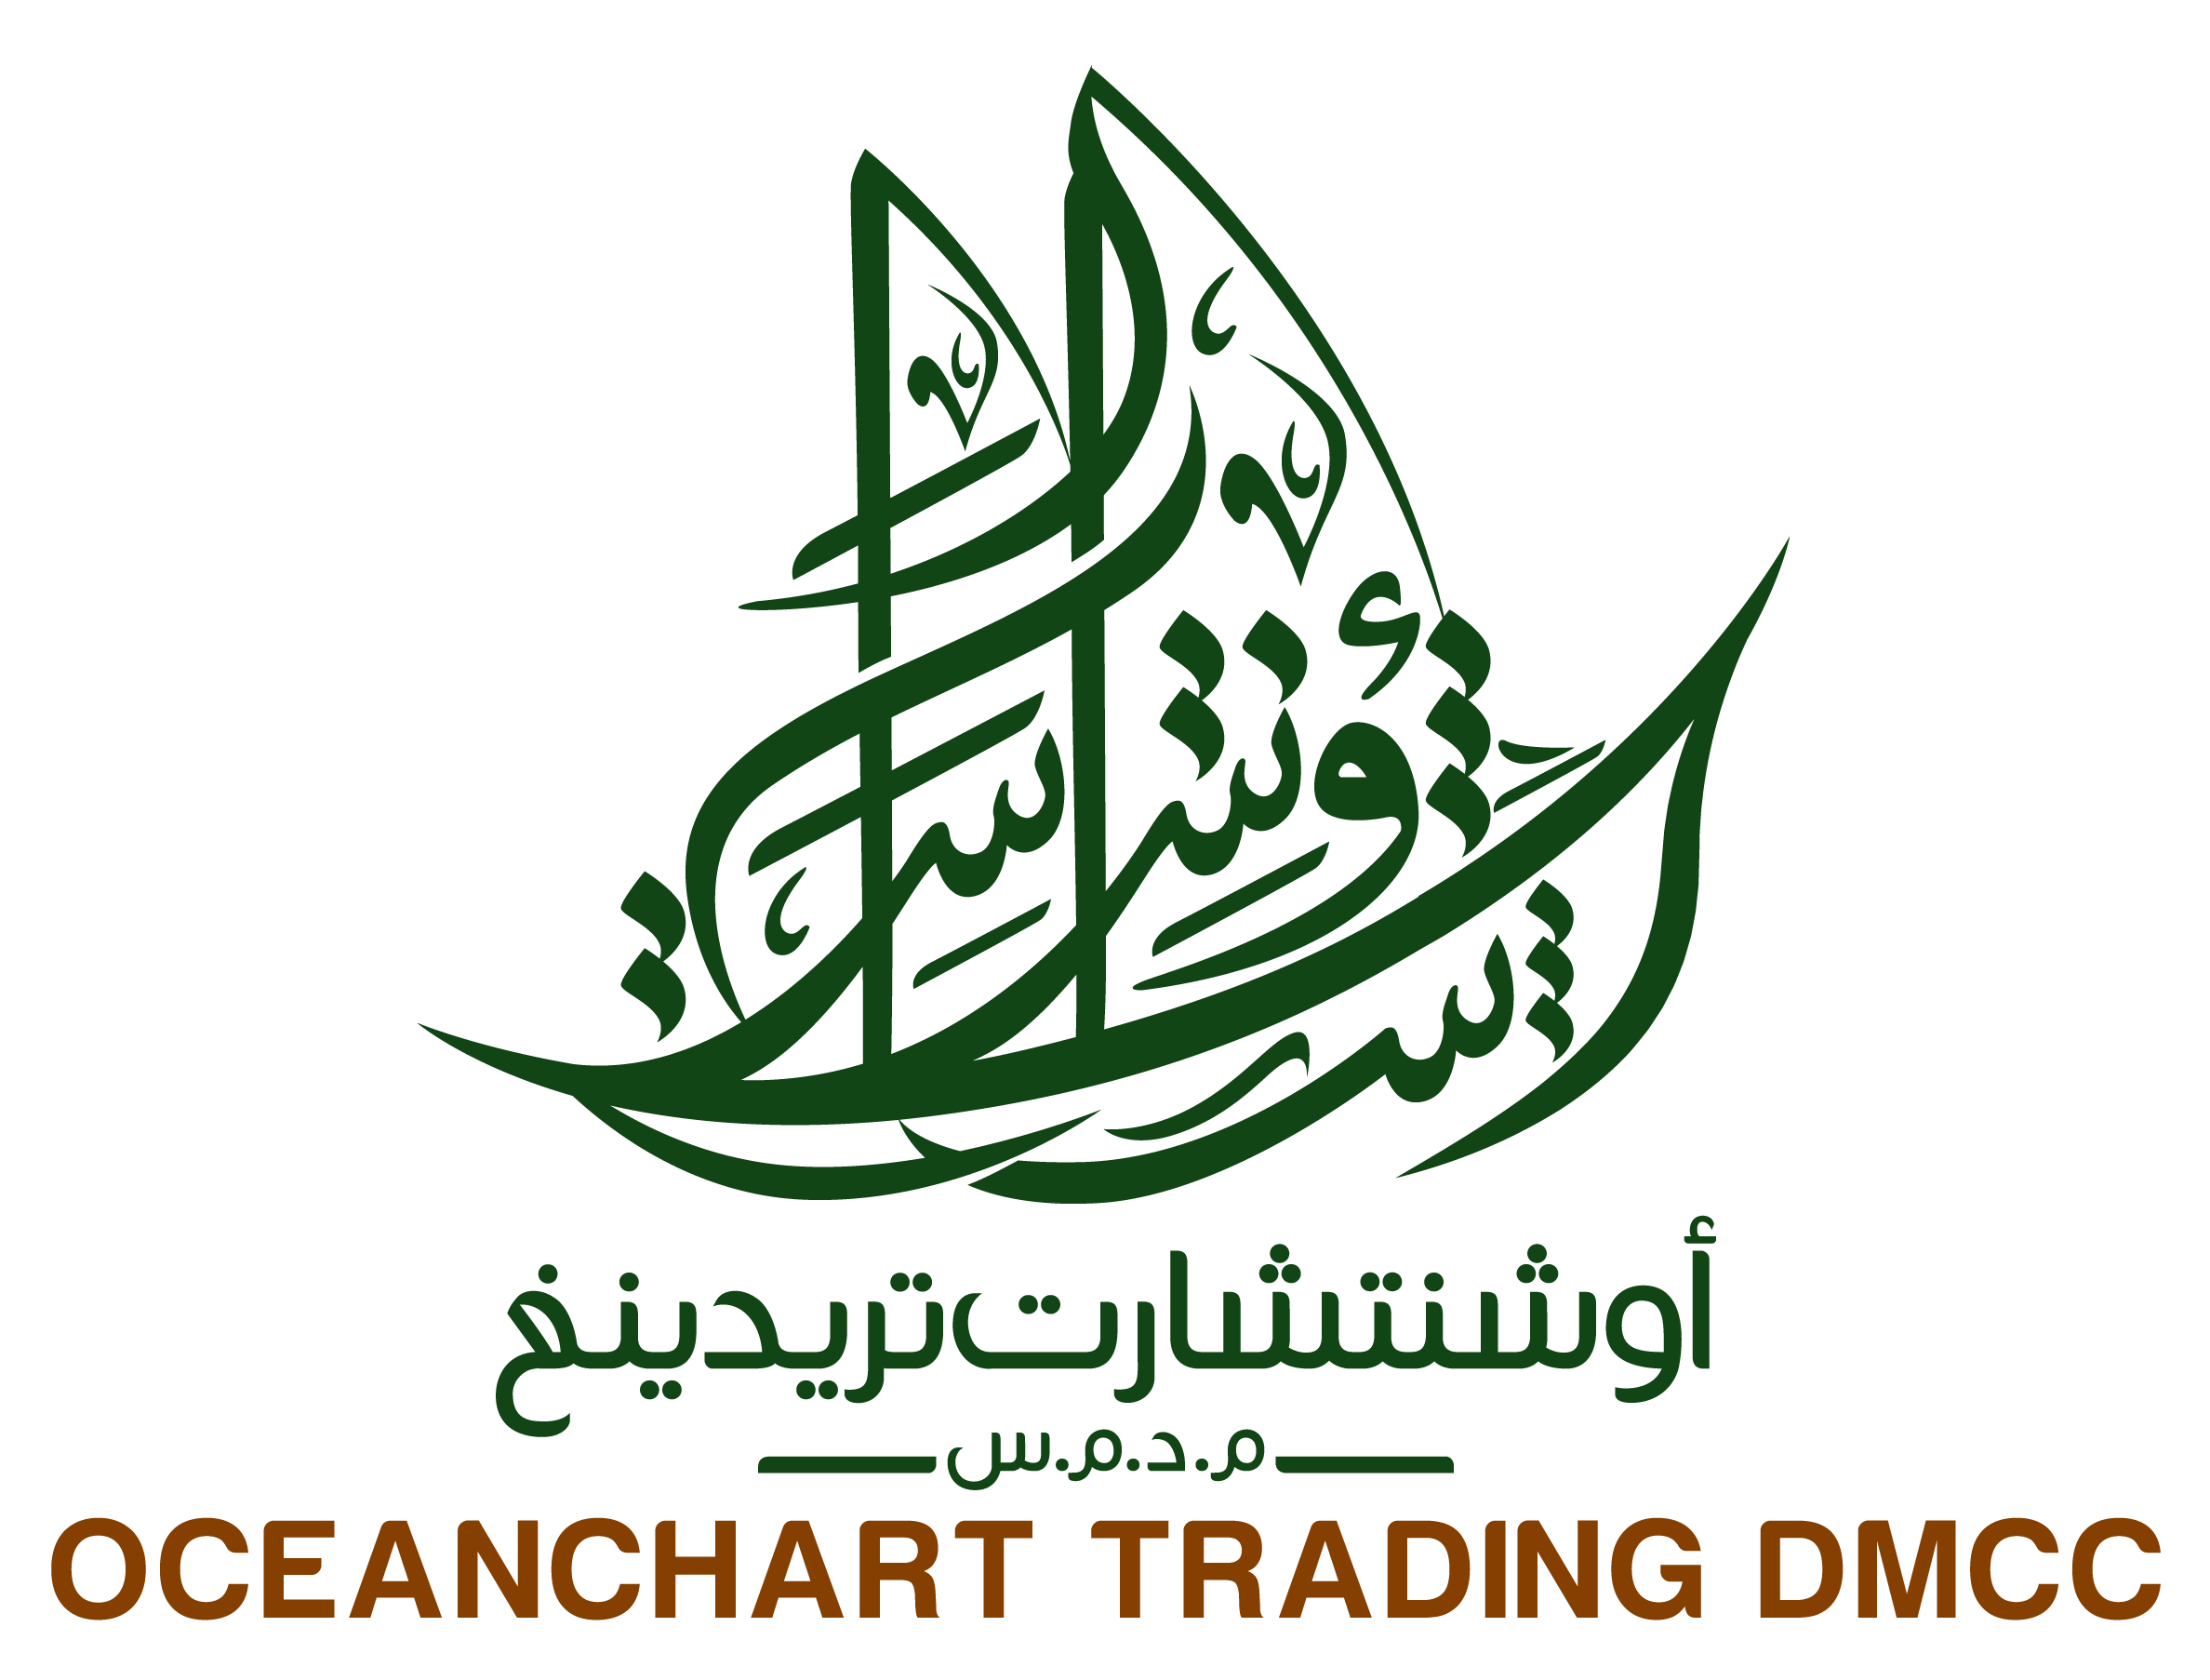 Oceanchart Trading DMCC